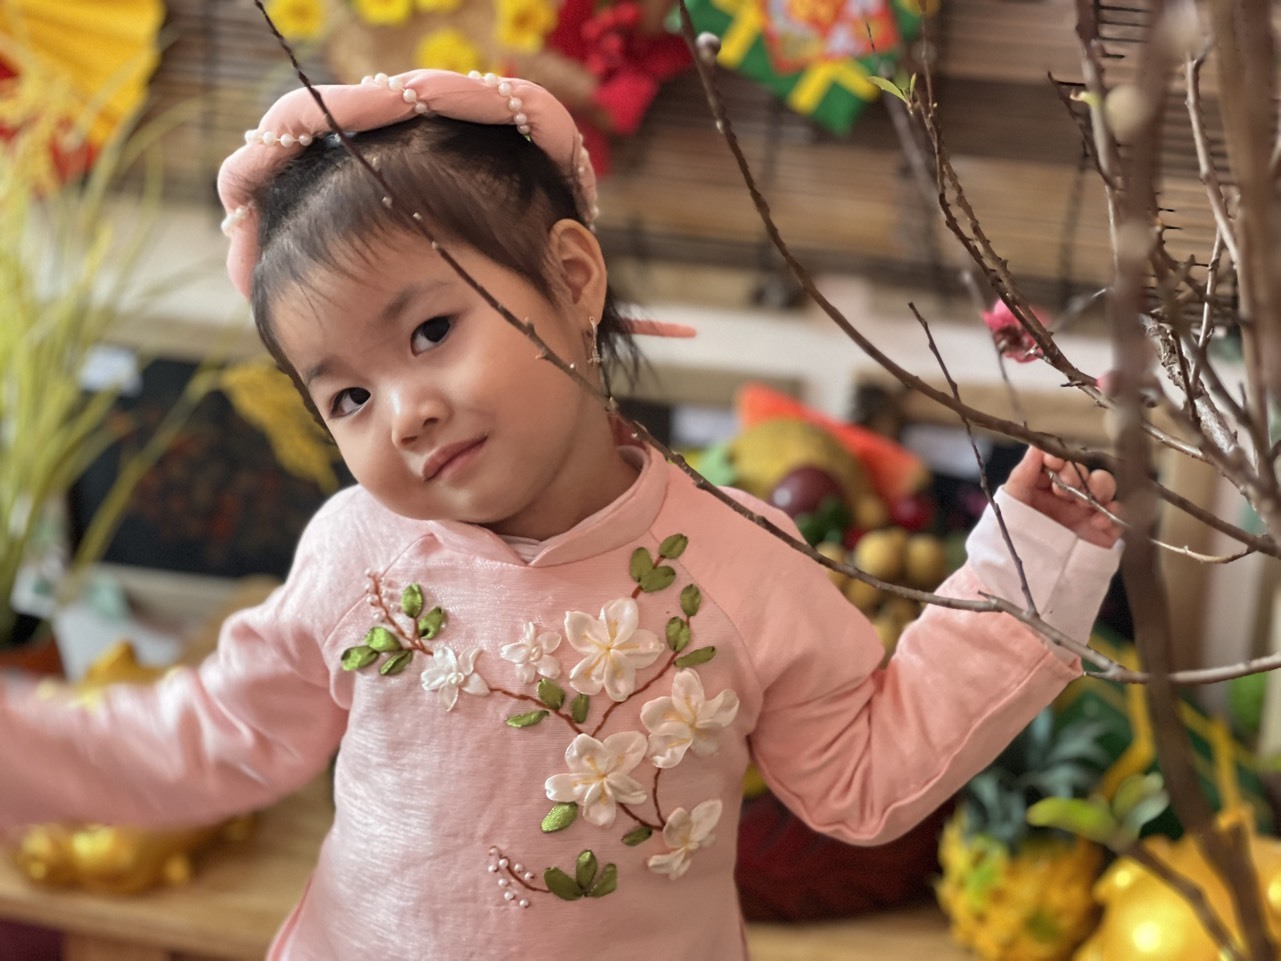 Nhiều hoạt động được các trường tổ chức nhằm giáo dục học sinh yêu Tết cổ truyền - nét đẹp truyền thống văn hoá của người Việt. Ảnh: phụ huynh cung cấp